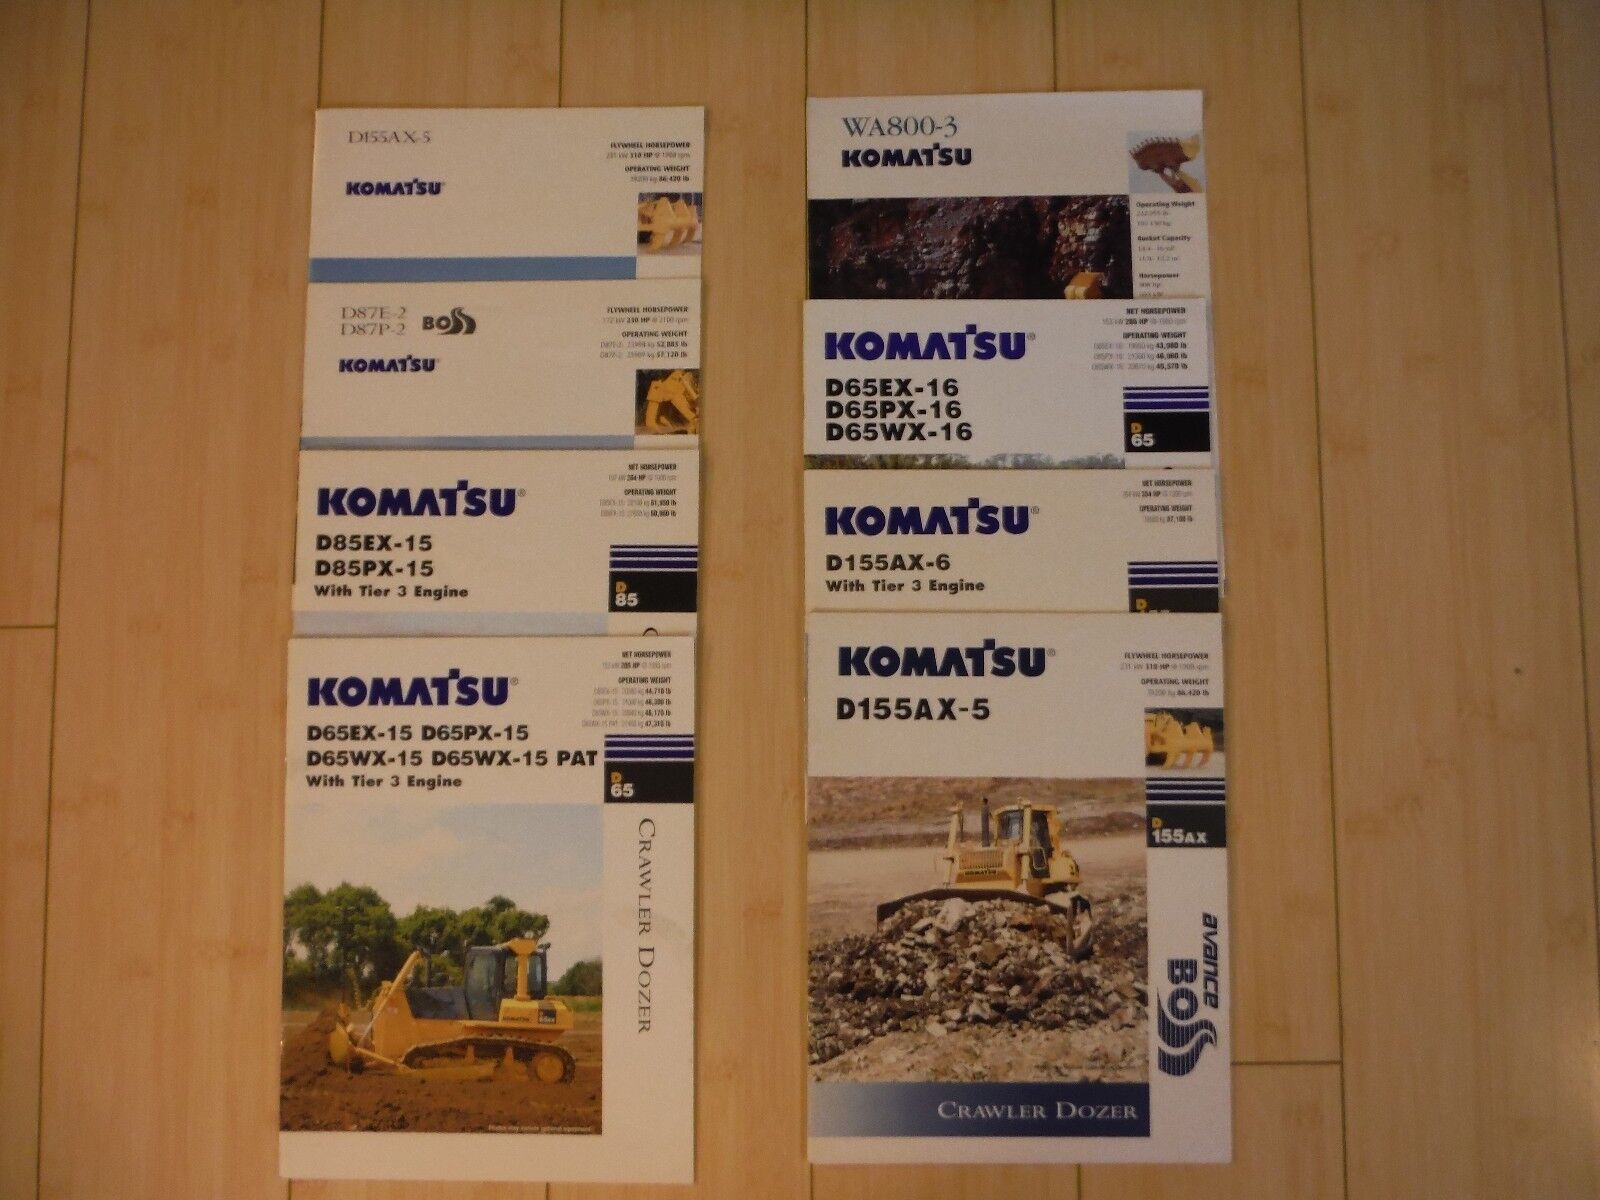 Komatsu Dozers Equipment Dealer Brochures (7) with Specifications